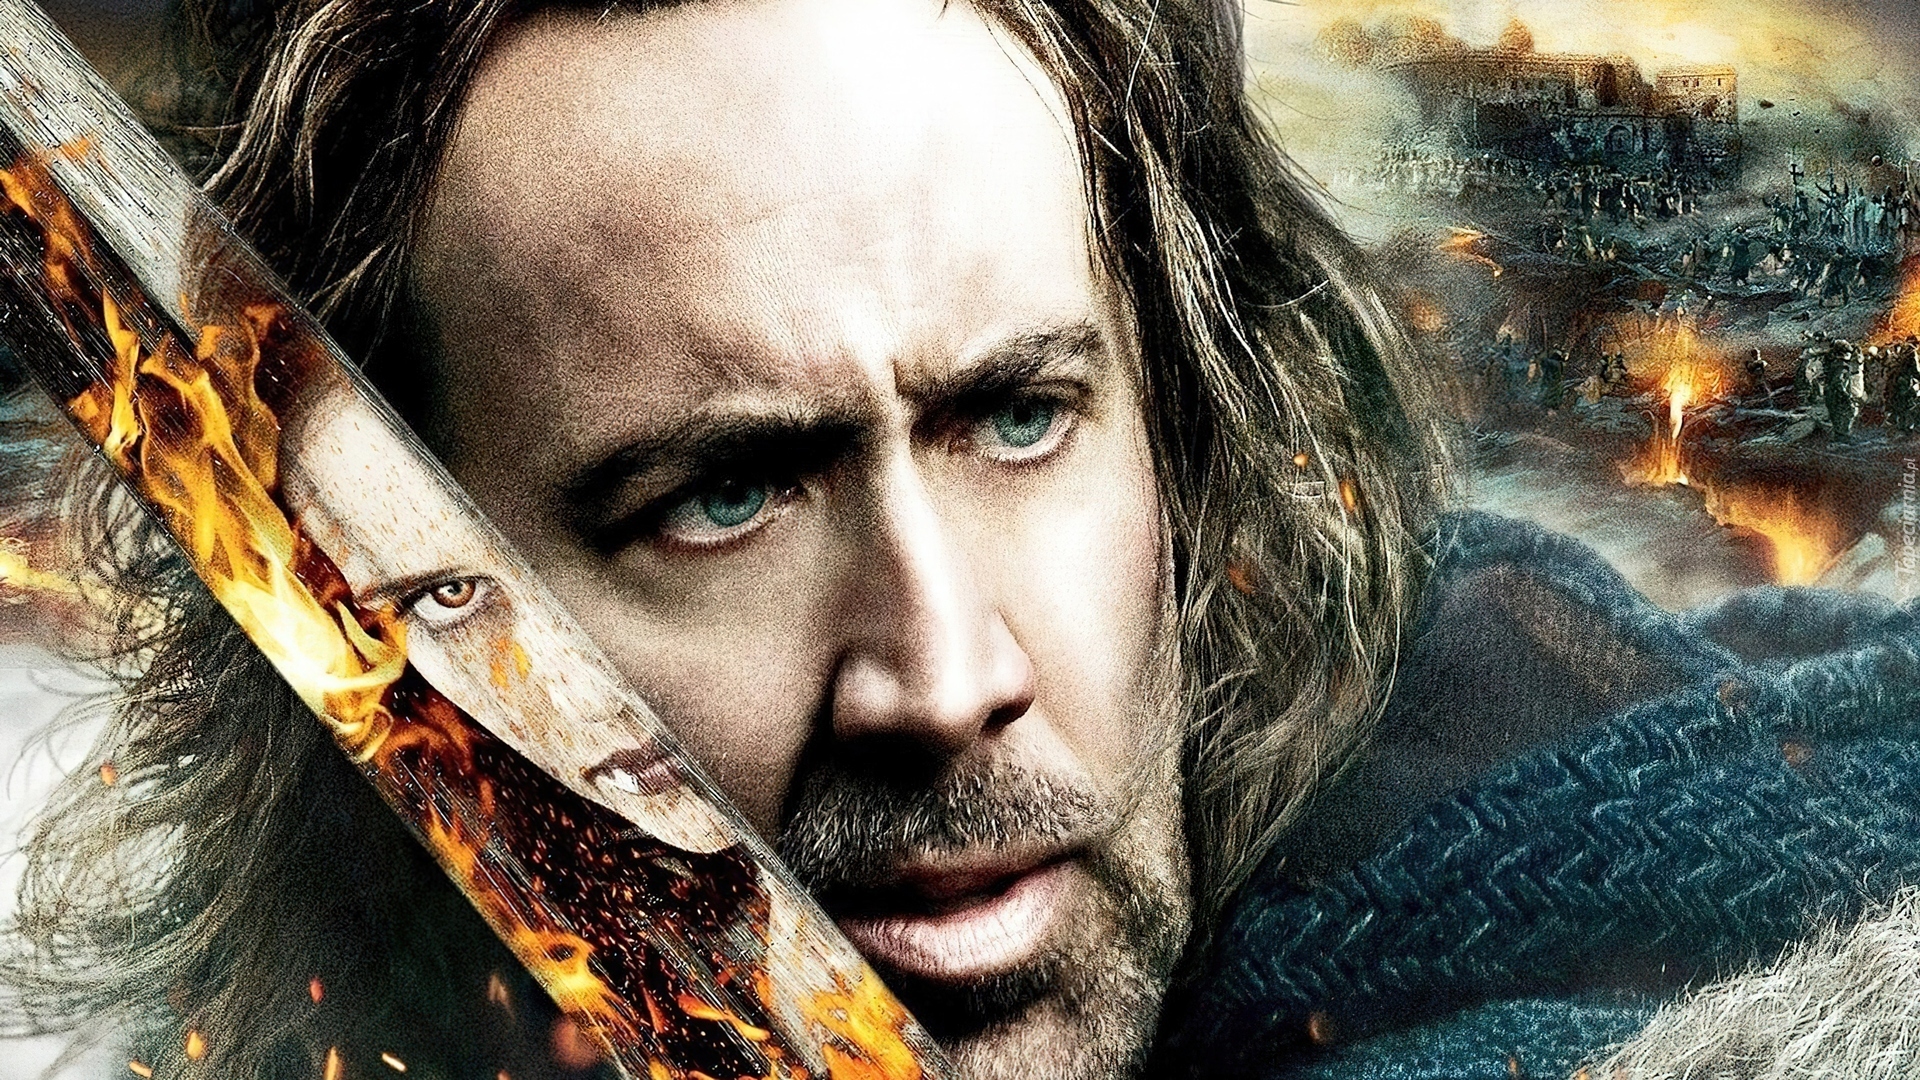 Nicolas Cage, Aktor, Film, Season Of The Witch